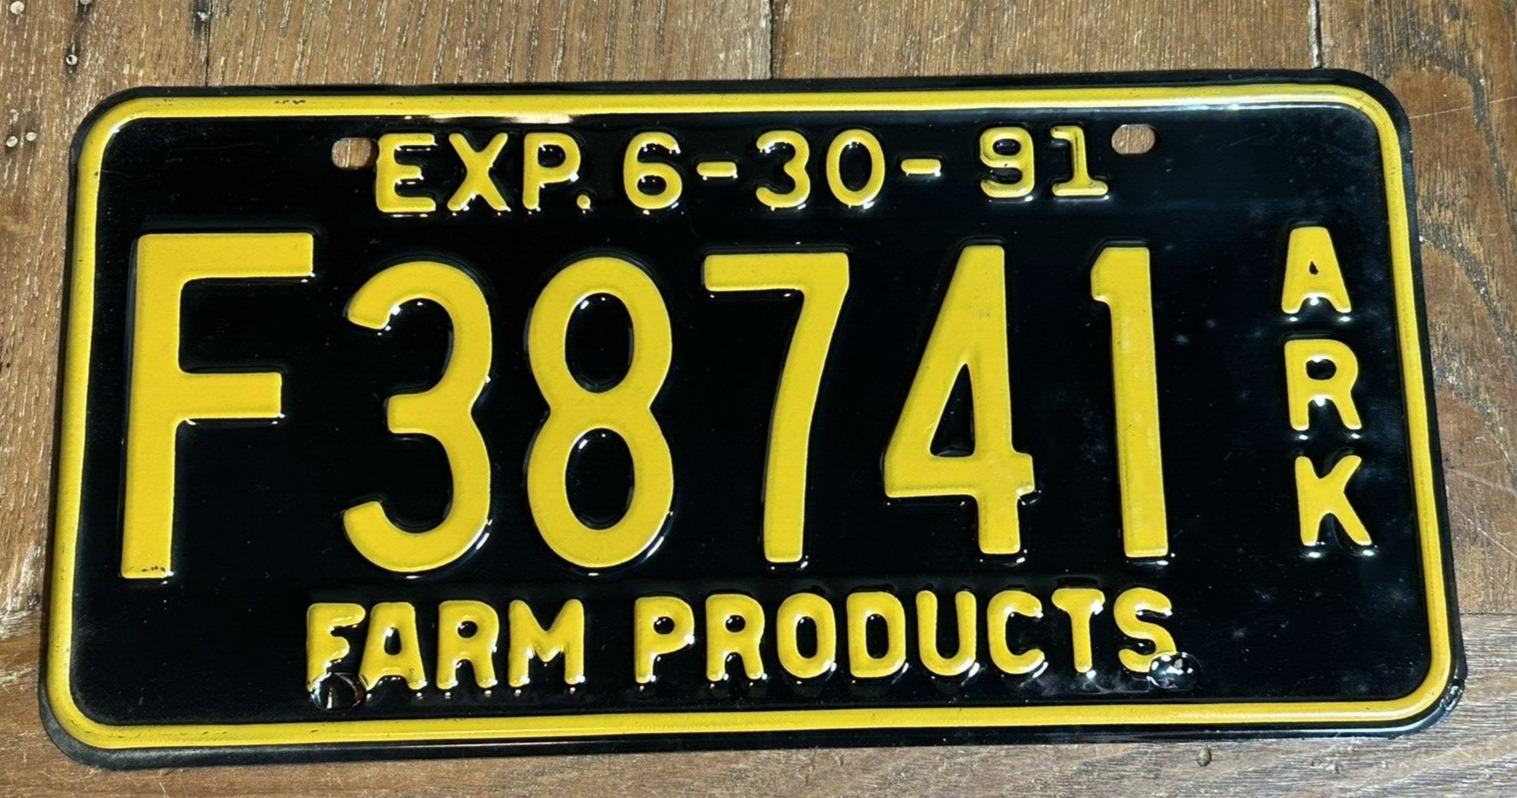 1991 Arkansas Farm Products vehicle License Plate unused steel NICE